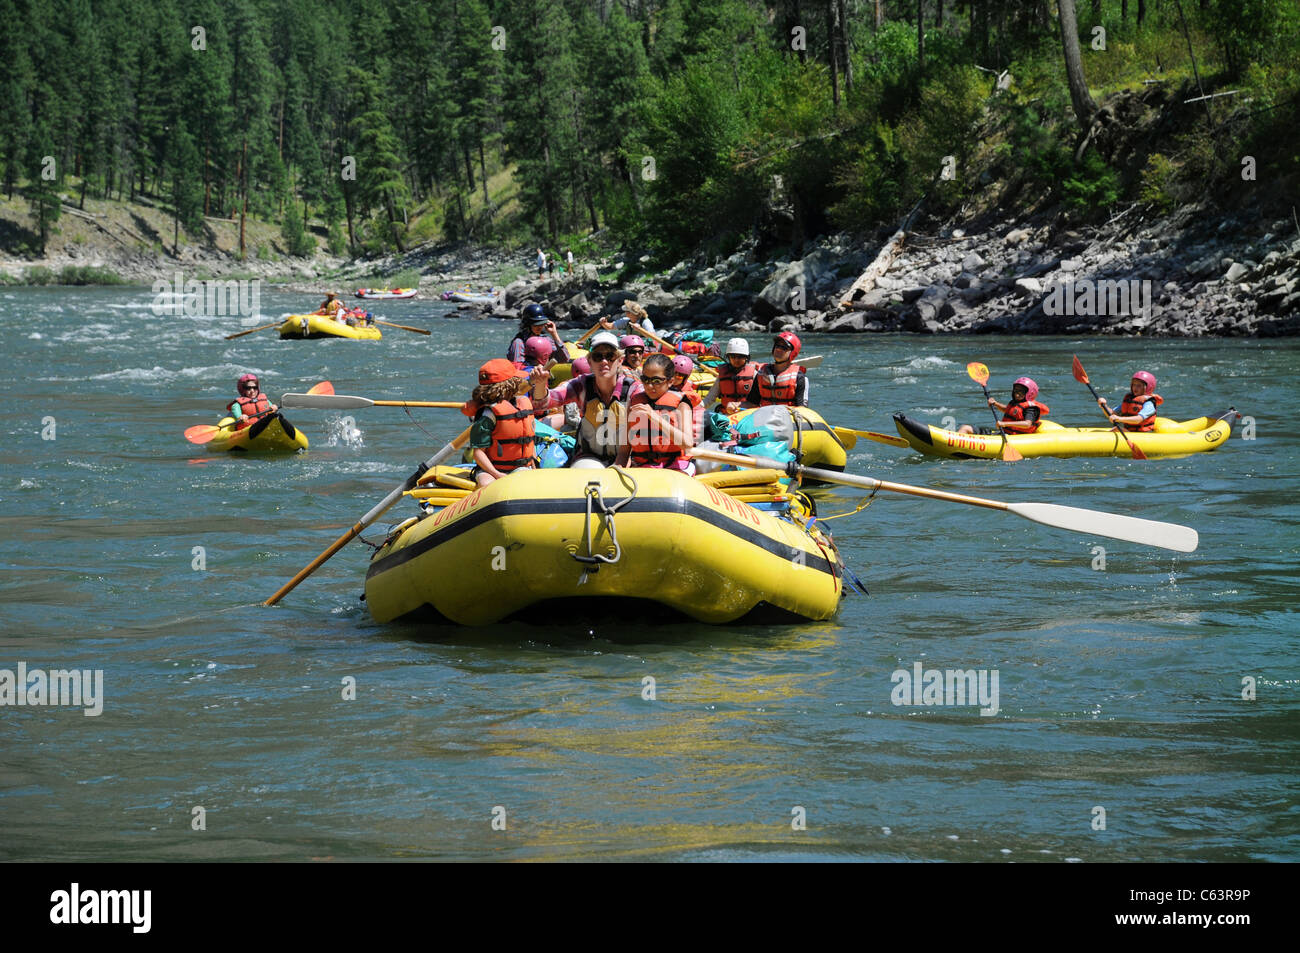 La patte caoutchouc bateaux, d'engins de pêche bateau, dory et kayaks gonflables avec le groupe O.A.R.S. on Main Salmon River dans l'Idaho Banque D'Images